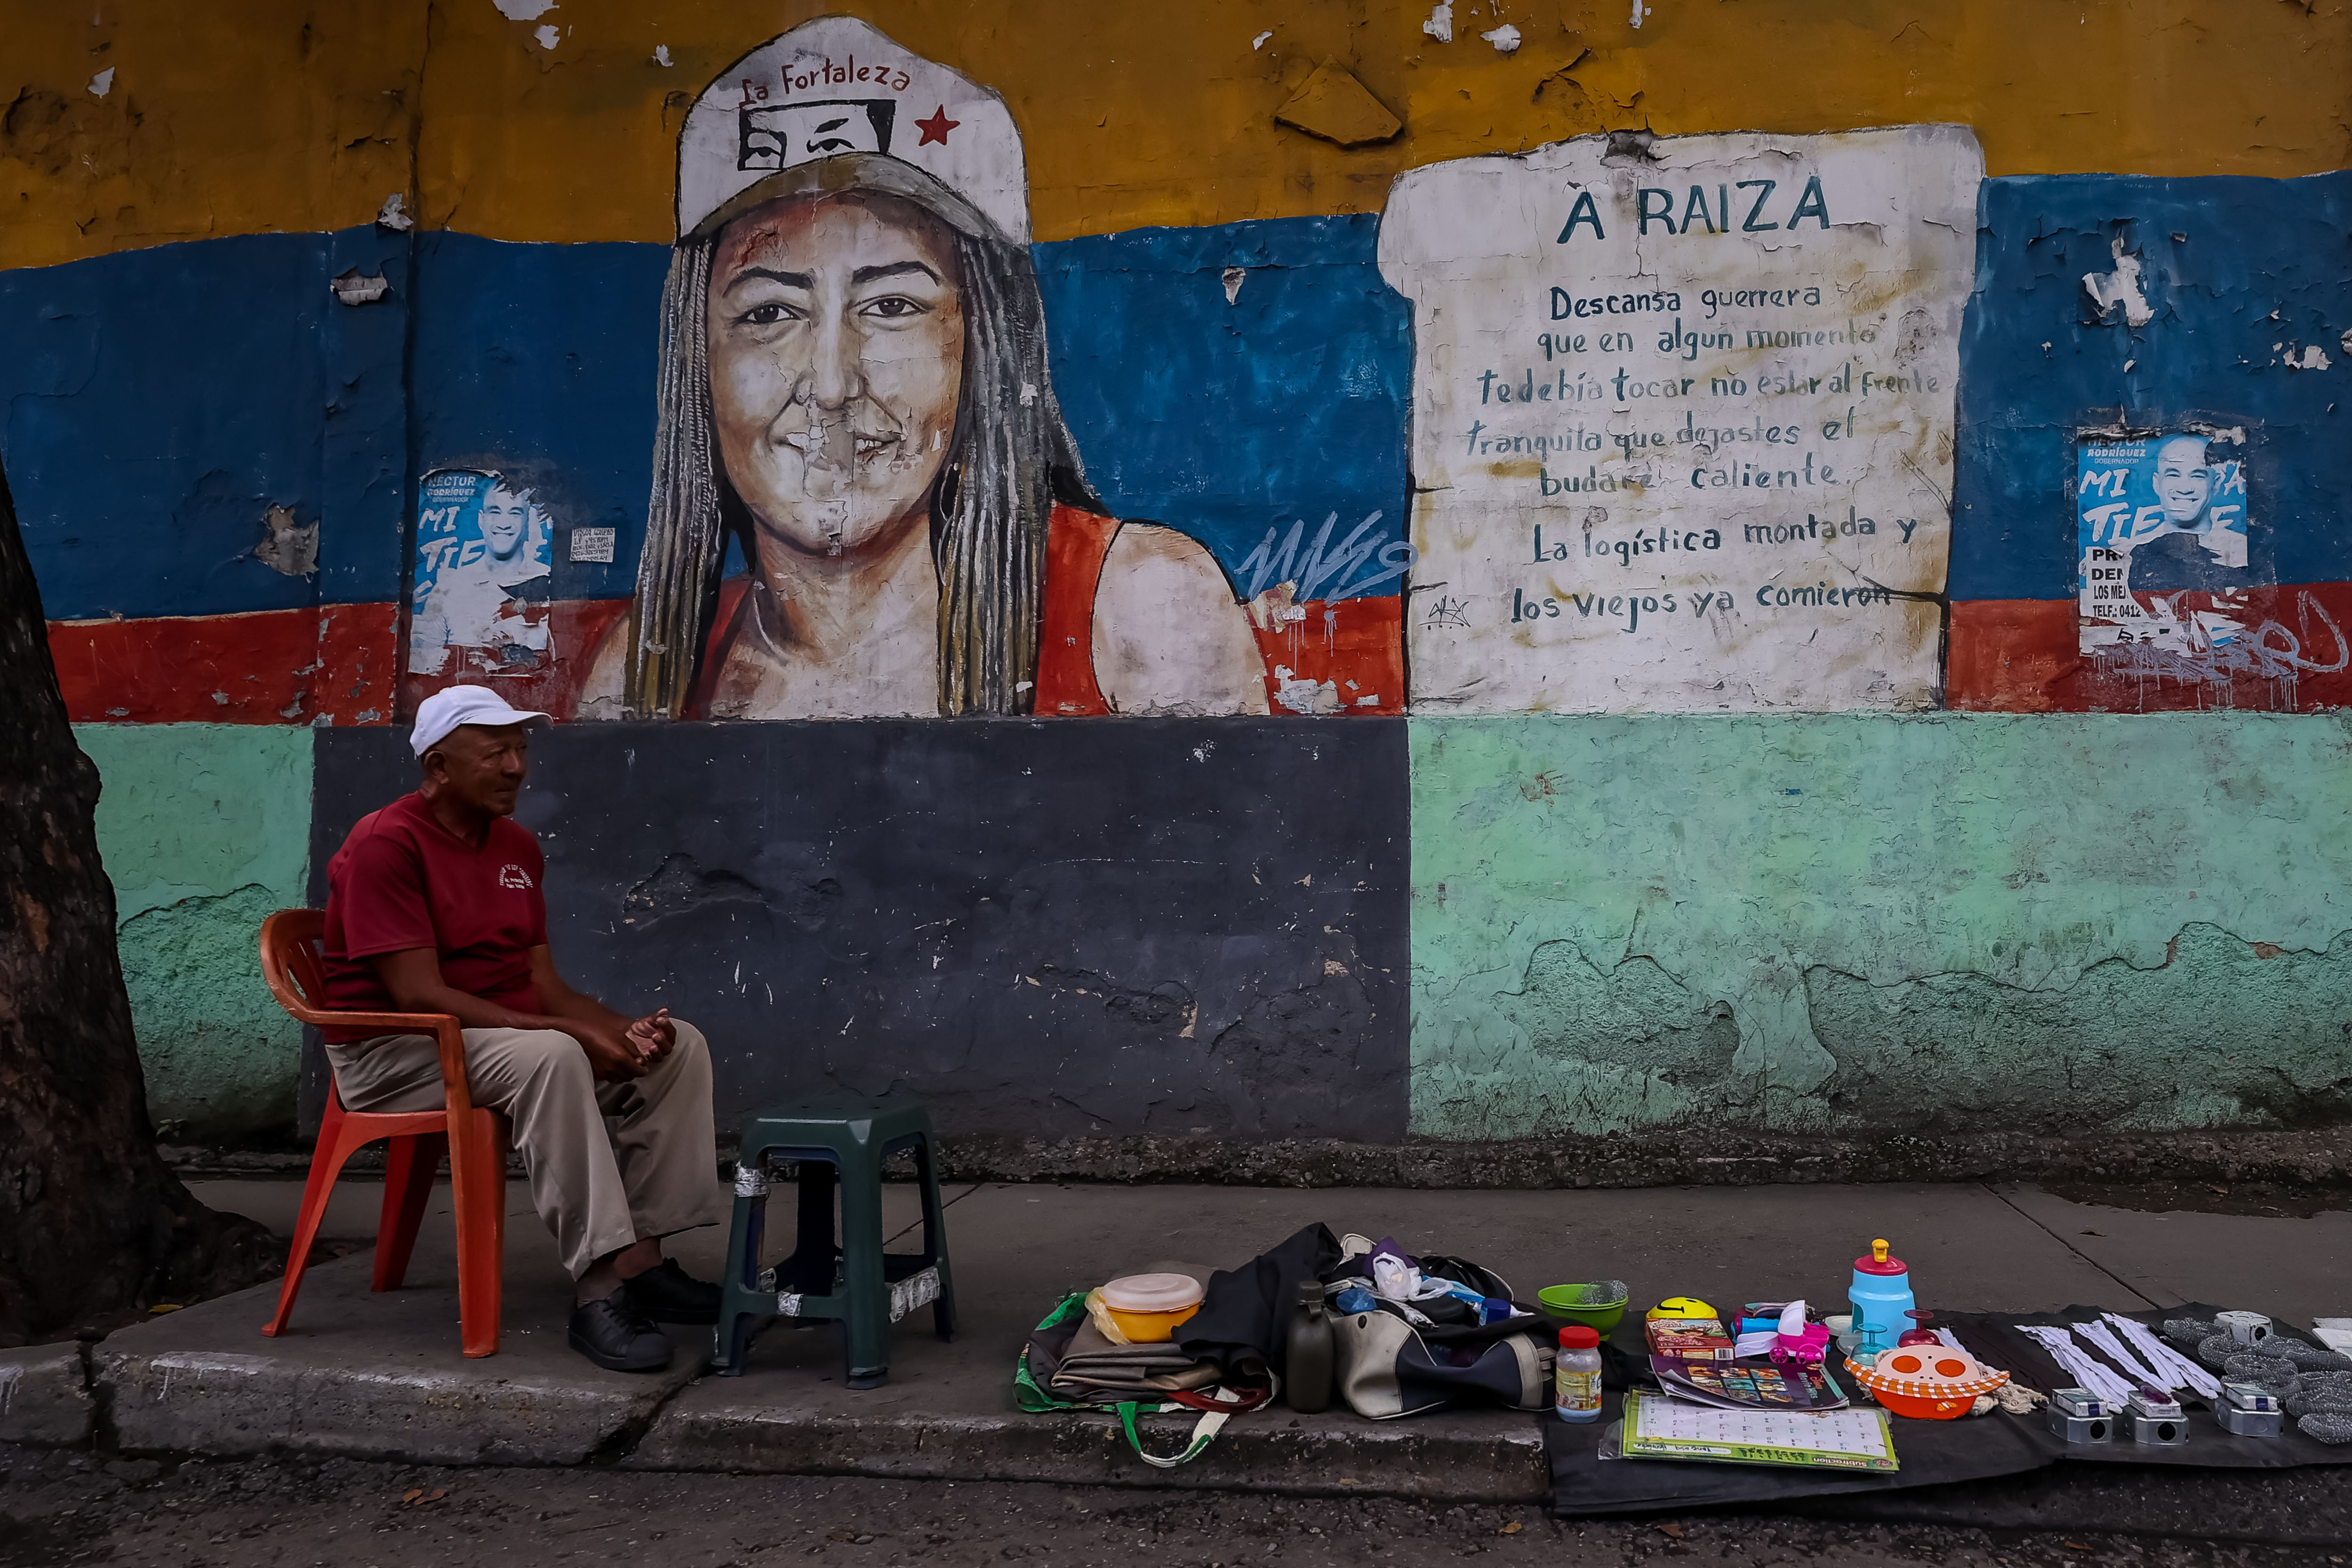 La mitad de la fuerza laboral de Venezuela trabaja “por cuenta propia”, según estudio de la Ucab